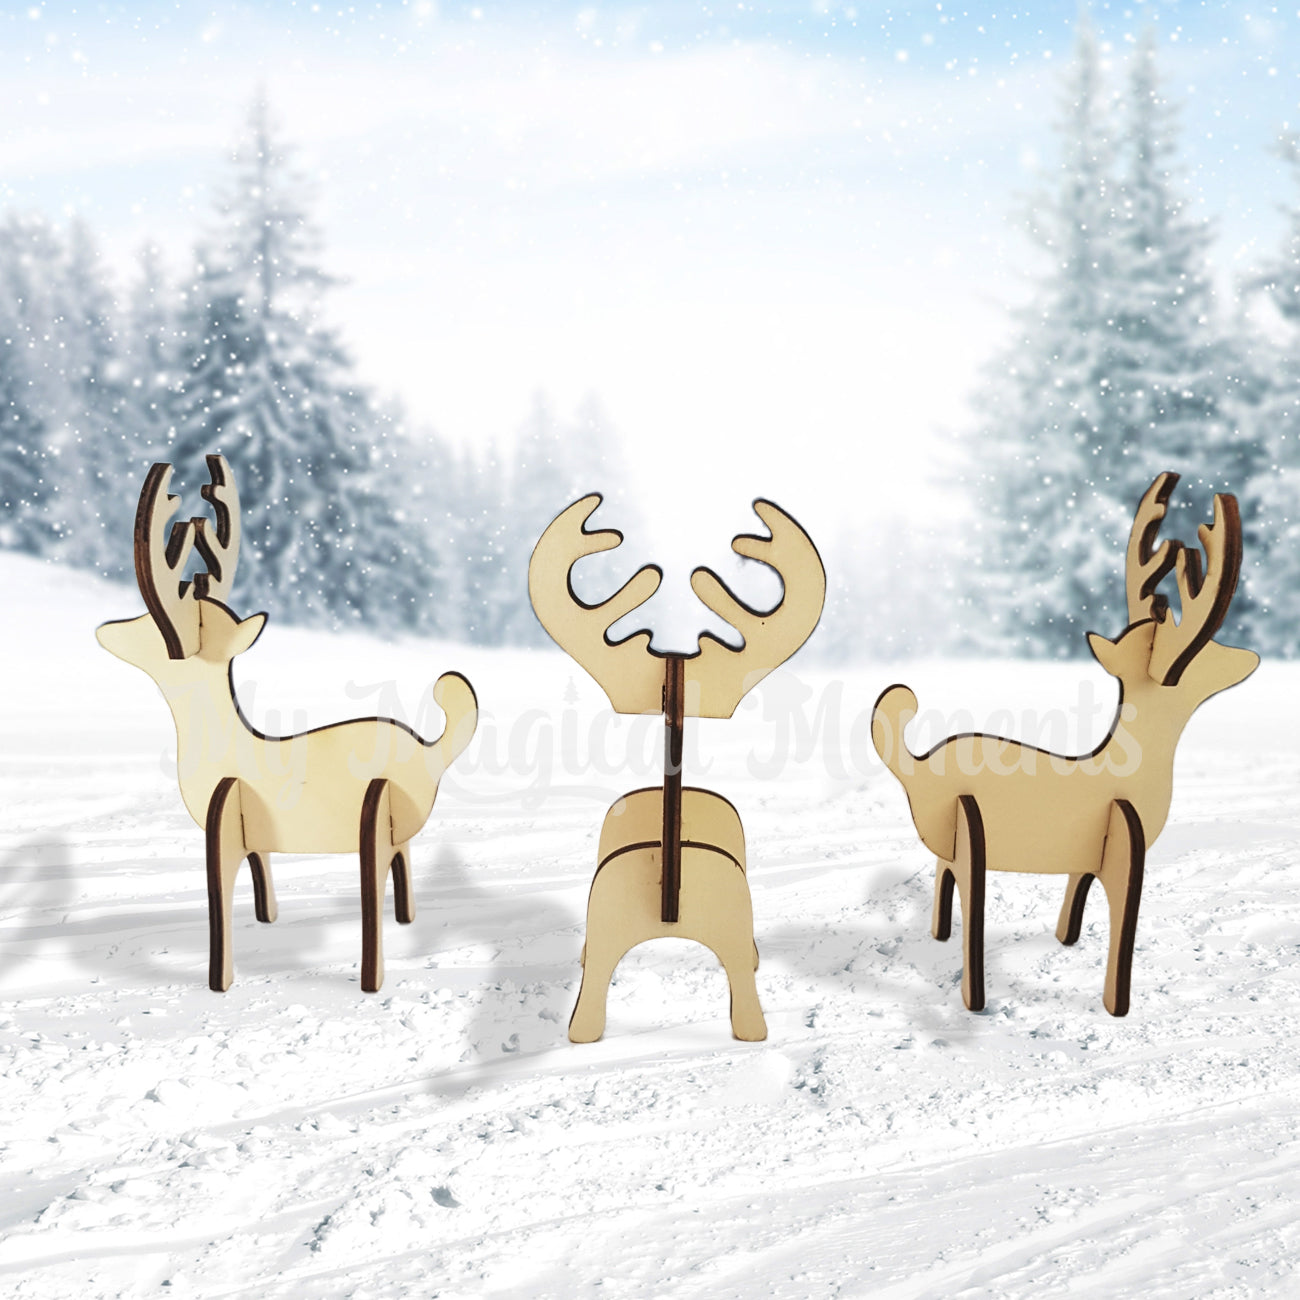 Wooden reindeer figures